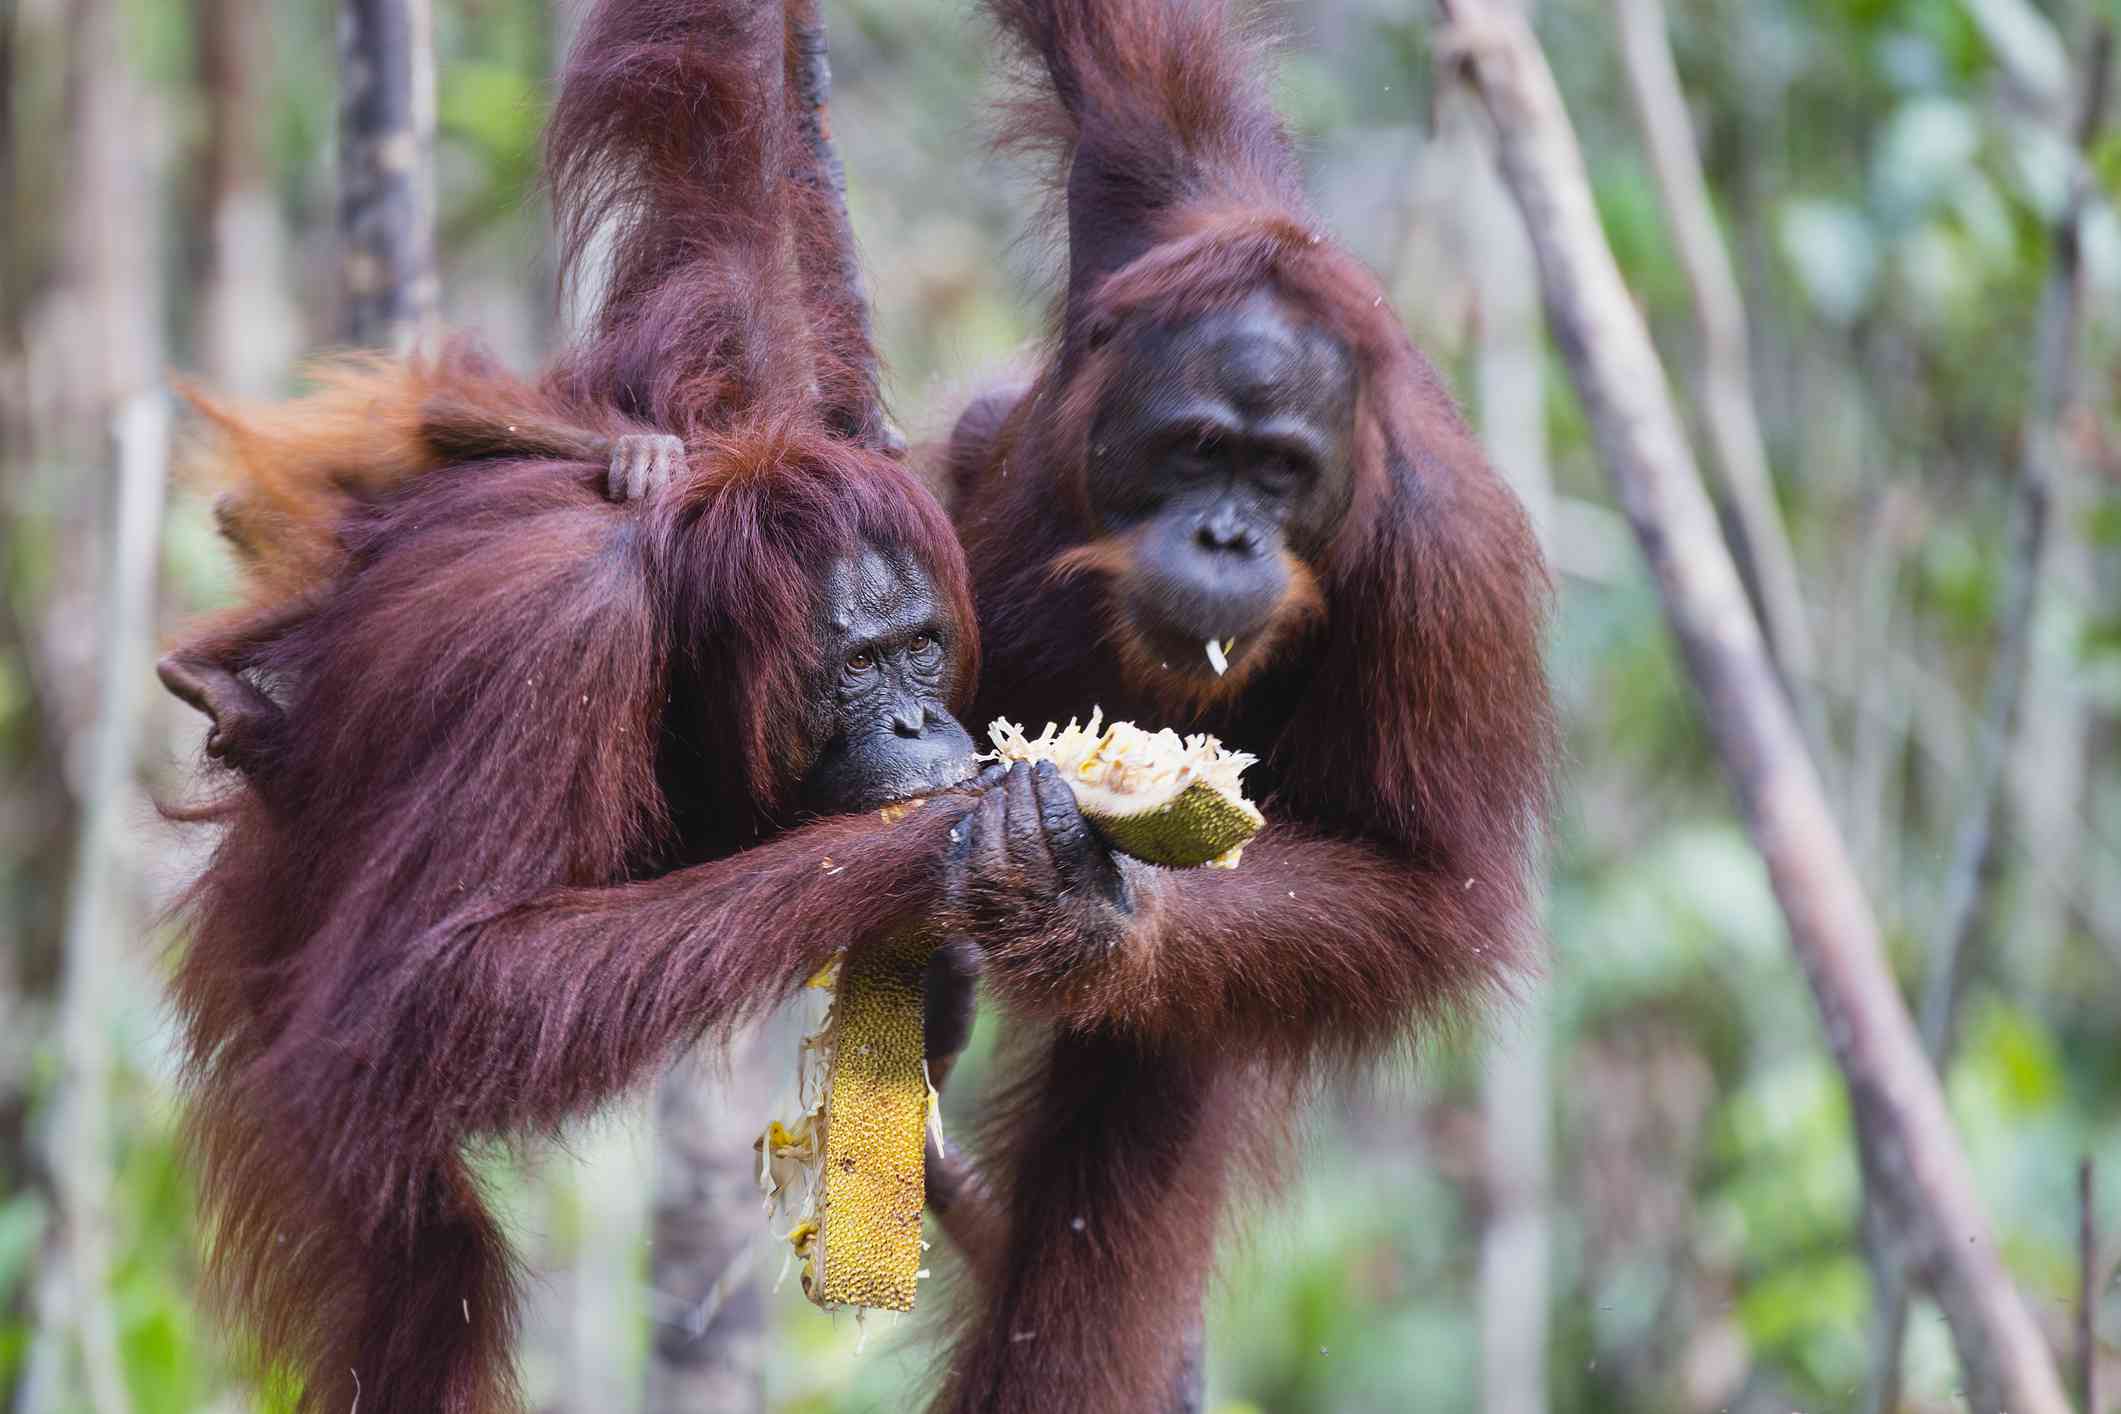 Pareja de orangutanes compartiendo comida